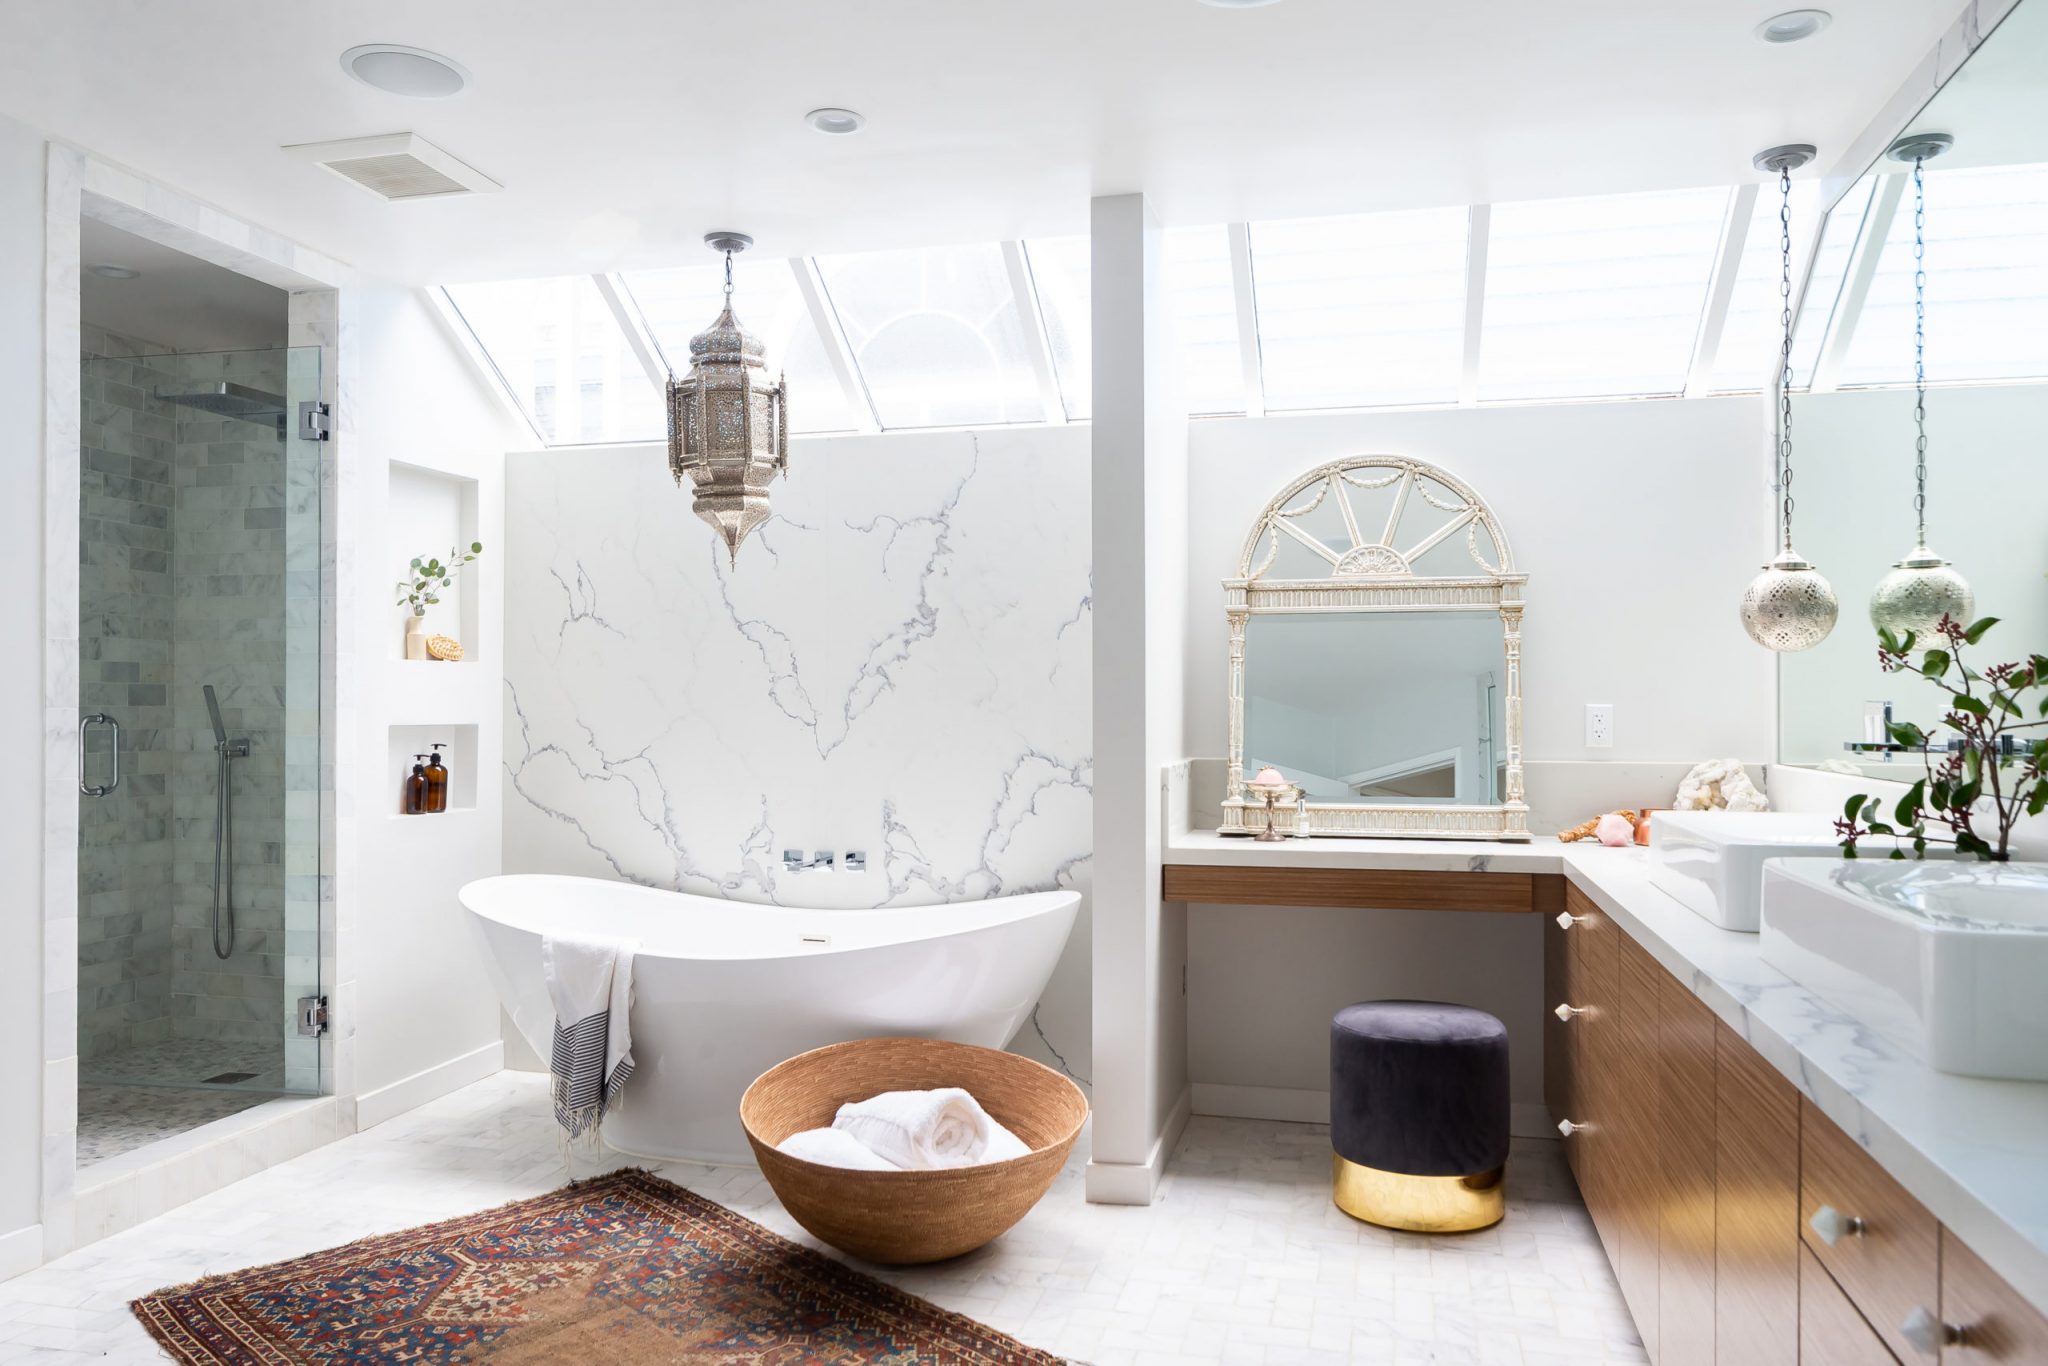 20 Best Small Bathroom Design Ideas To Stylish Your Bathroom   Foyr